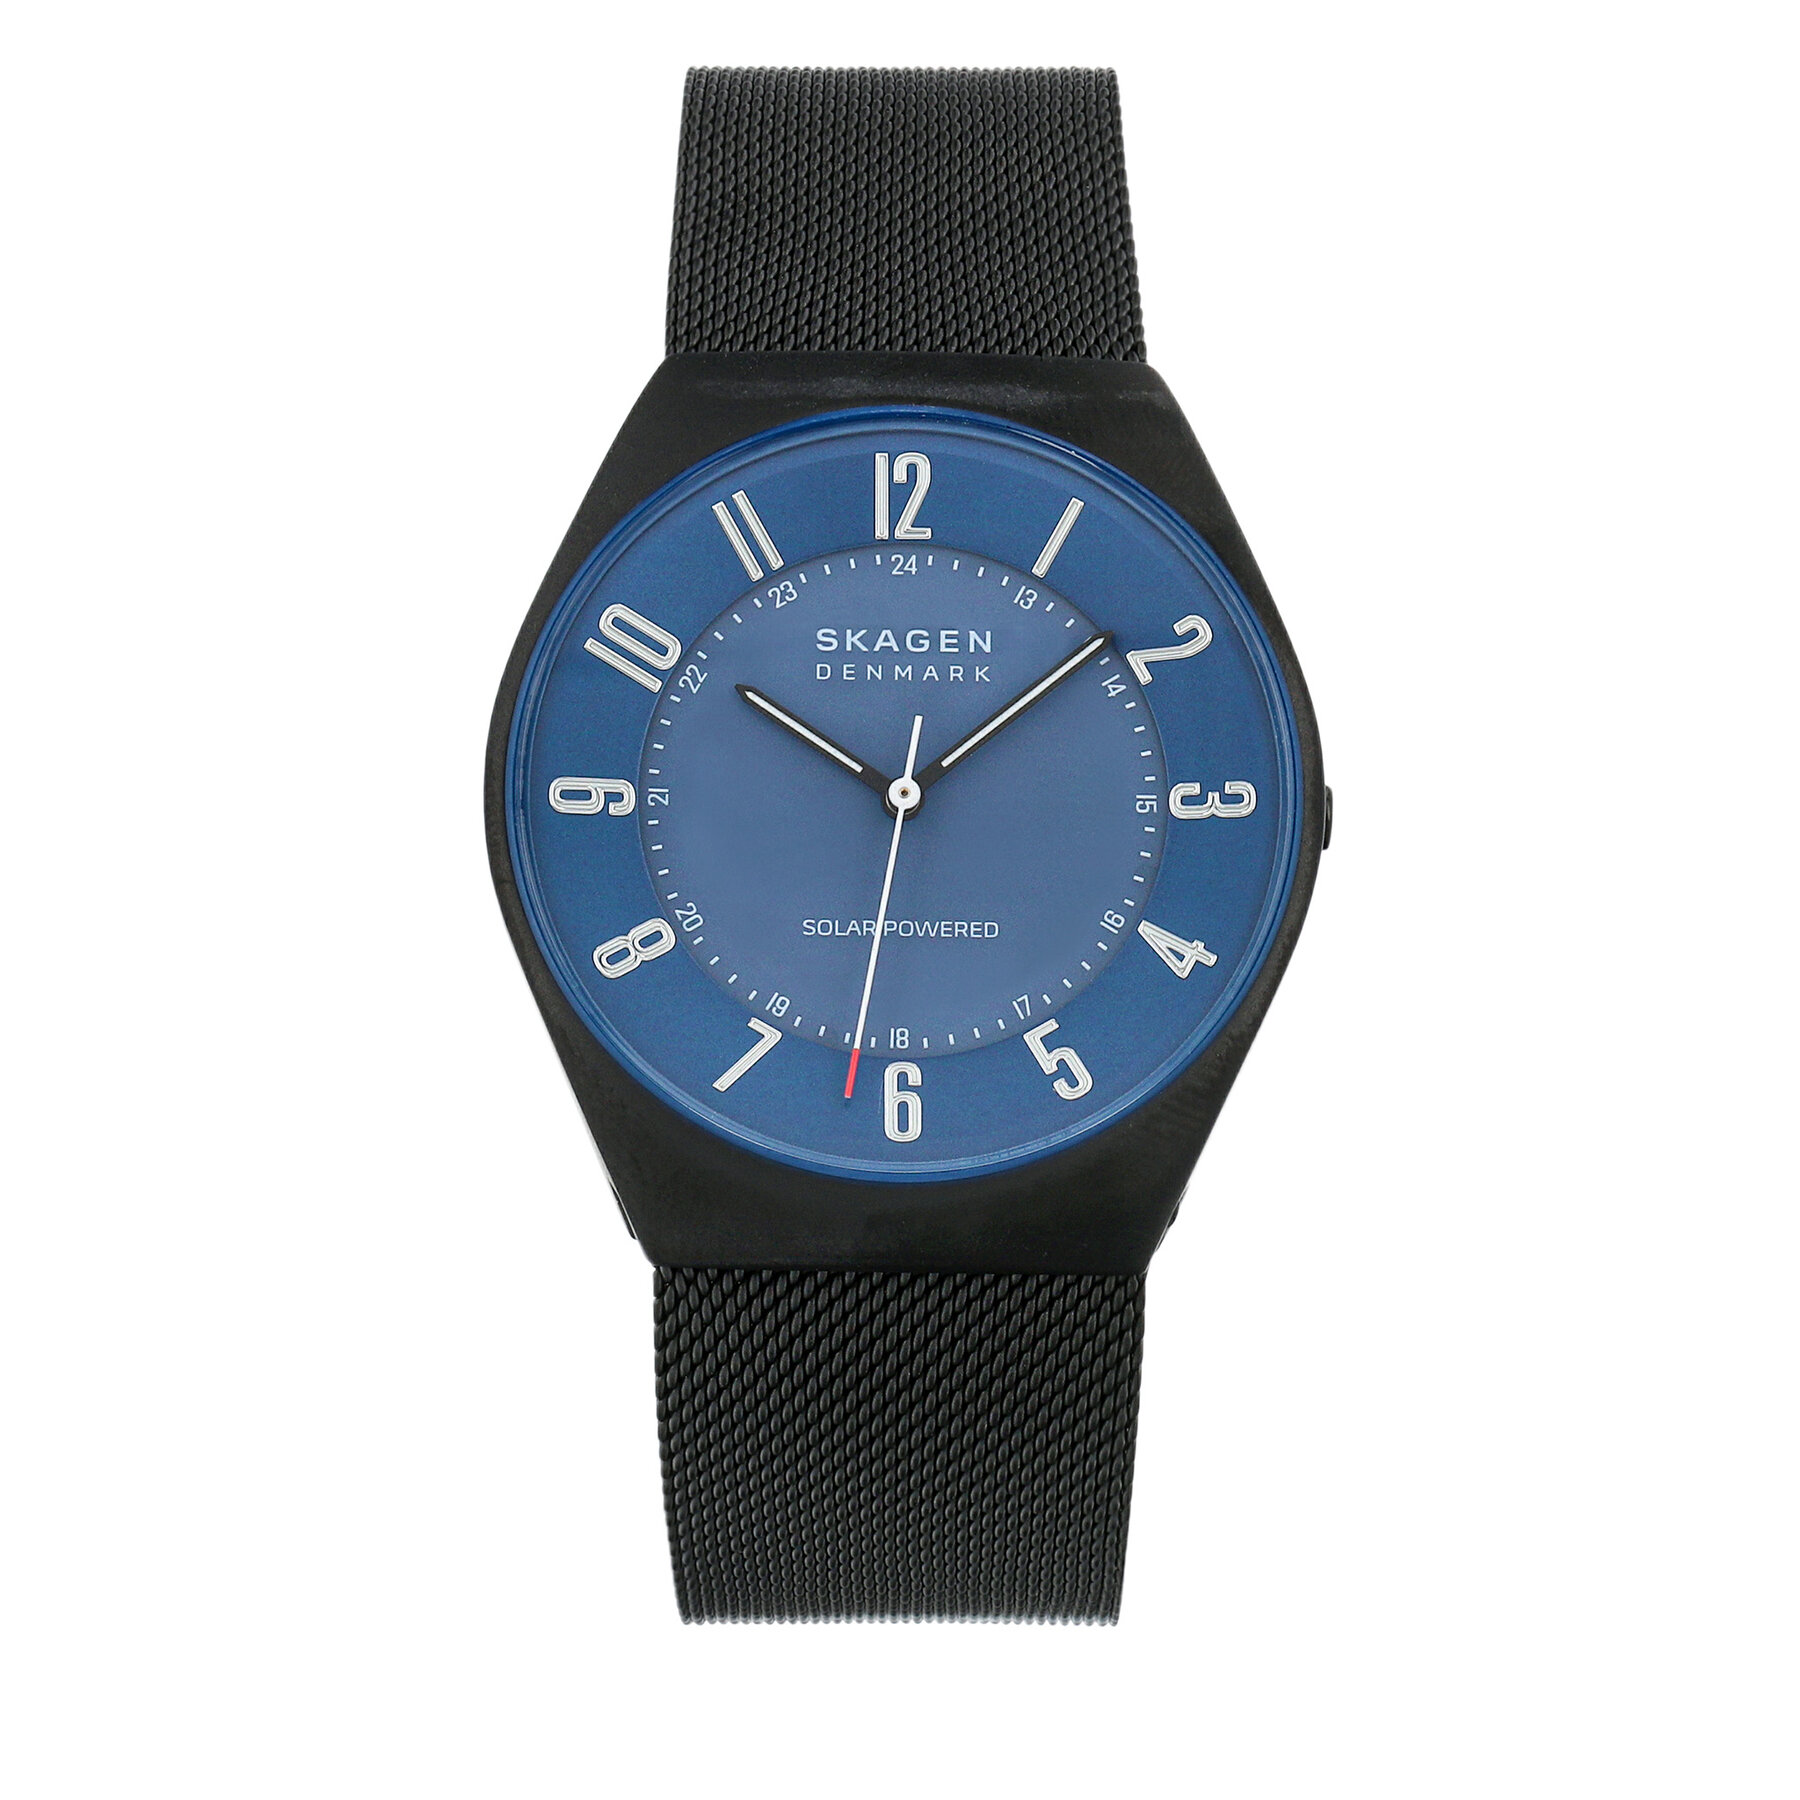 Comprar en oferta Skagen Grenen reloj para hombre, movimiento solar con correa de acero o piel, Negro y azul, 37MM